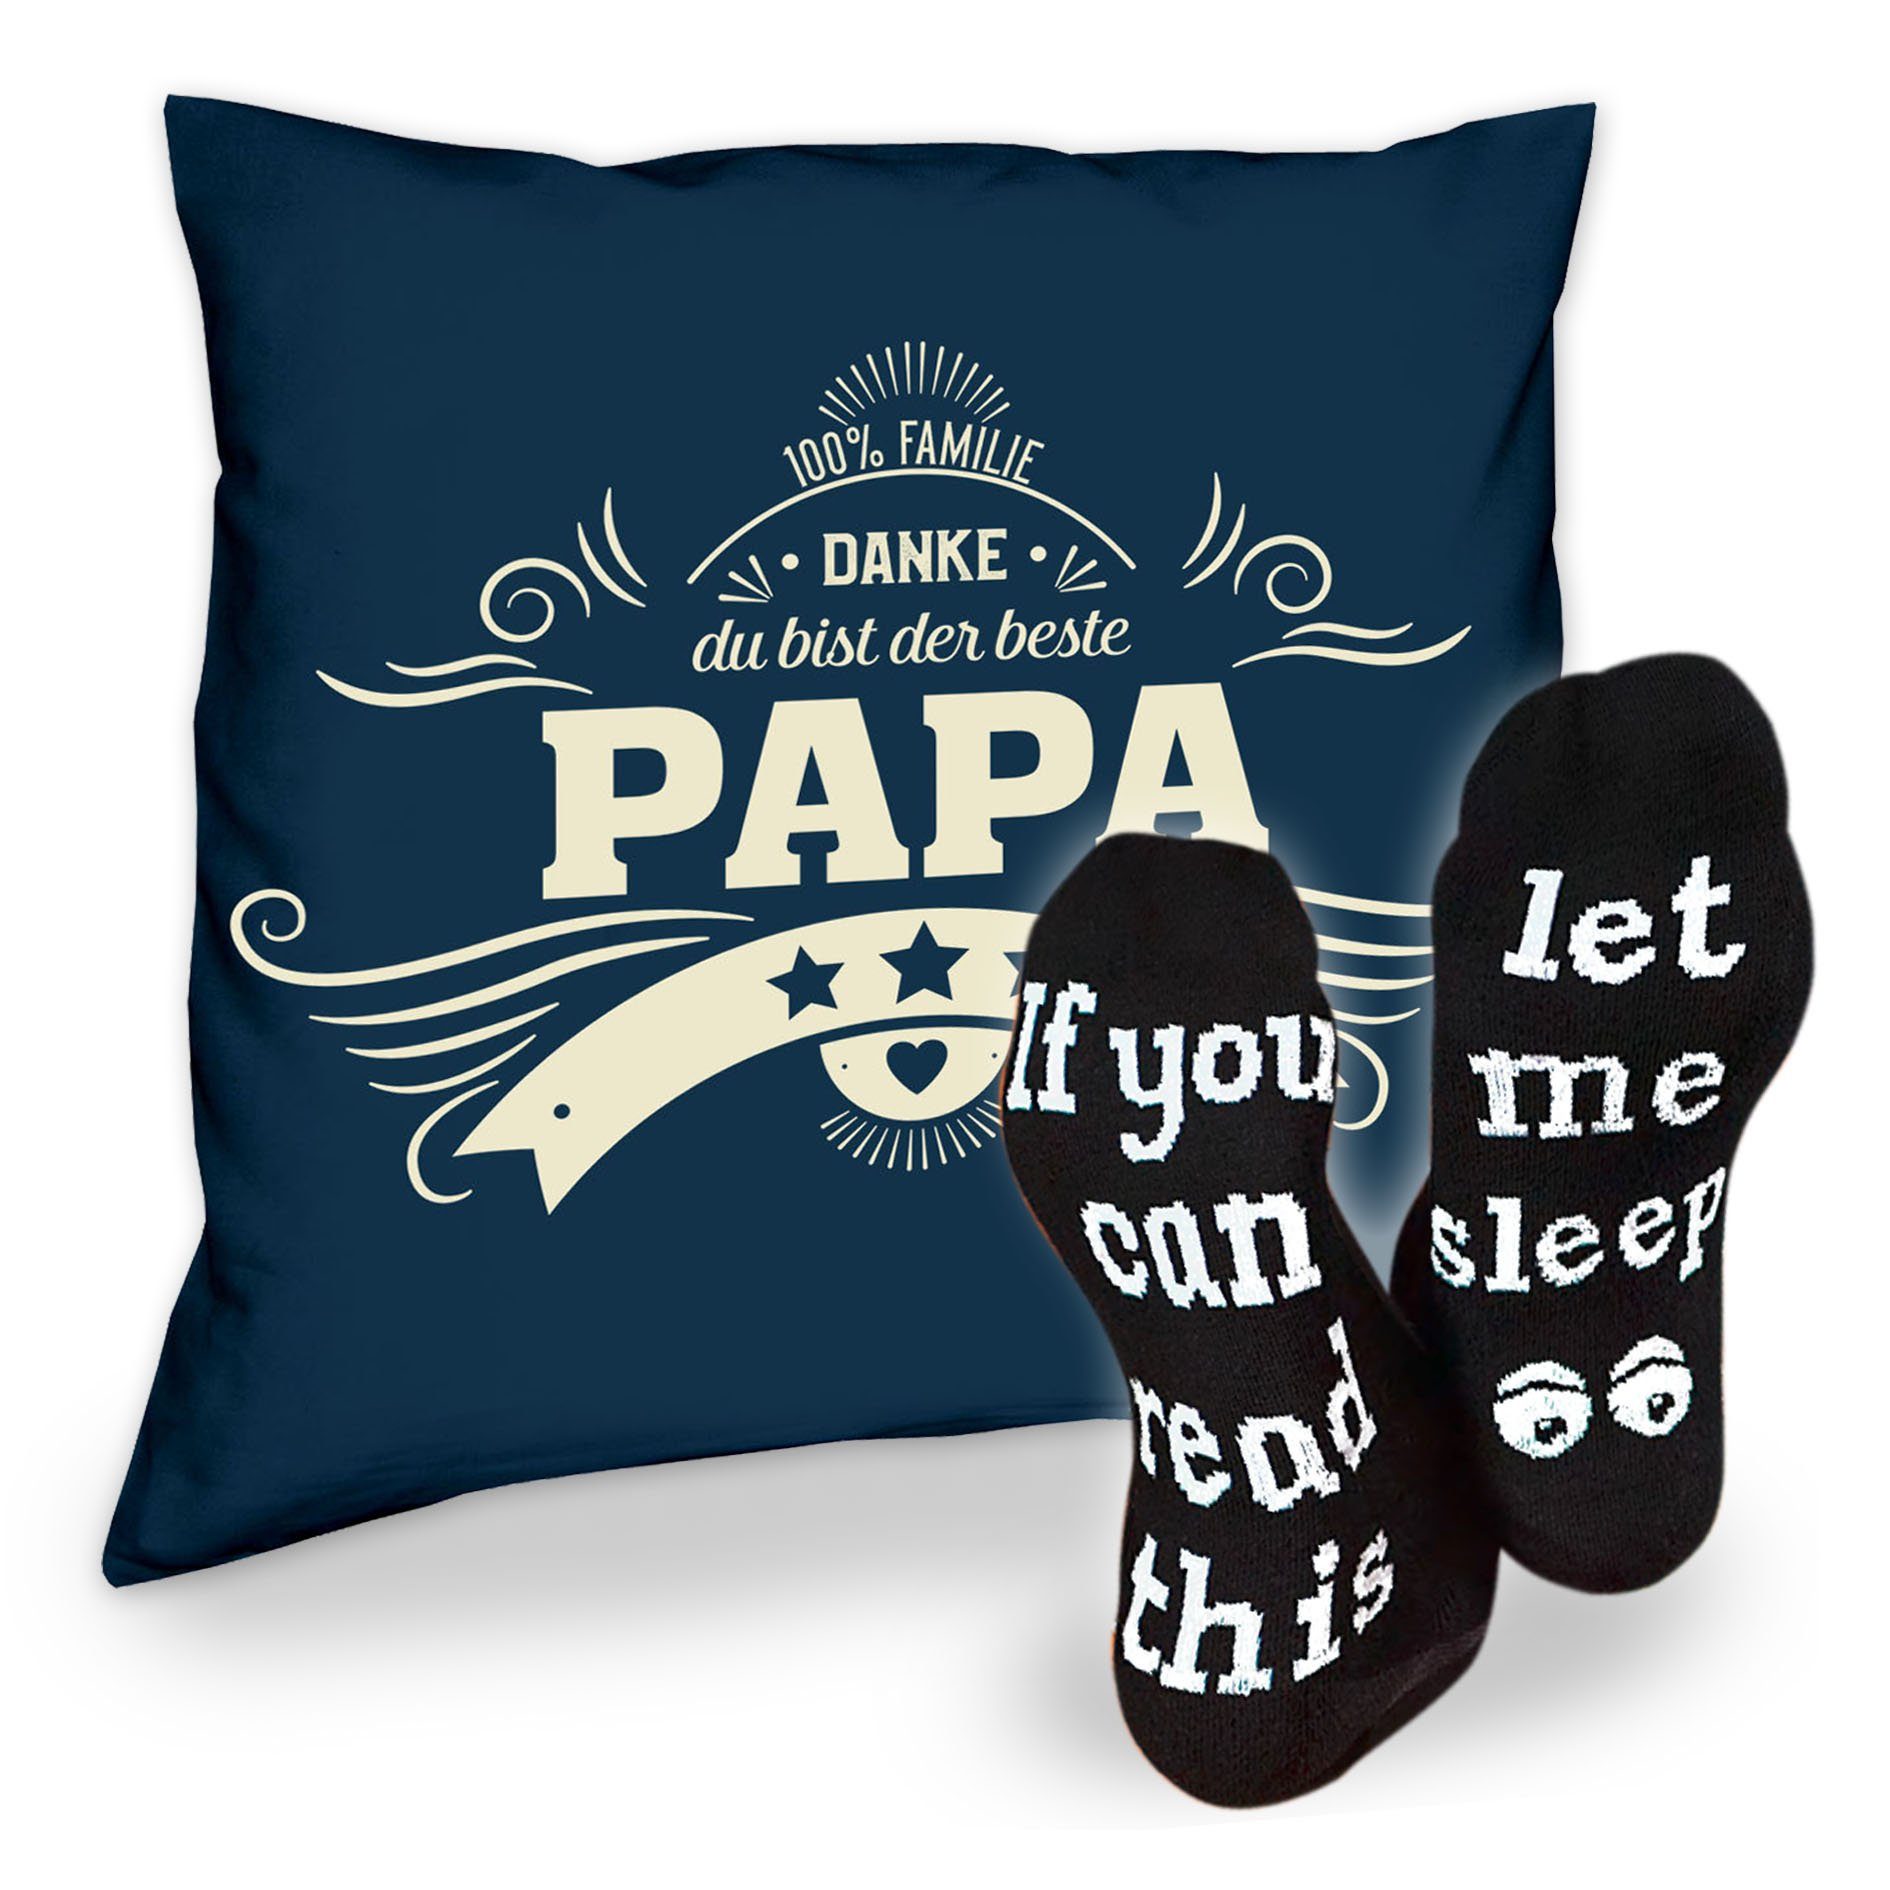 Sleep, Geschenkidee Sprüche Papa Kissen Dekokissen Danke Socken navy-blau Weihnachtsgeschenk & Soreso®